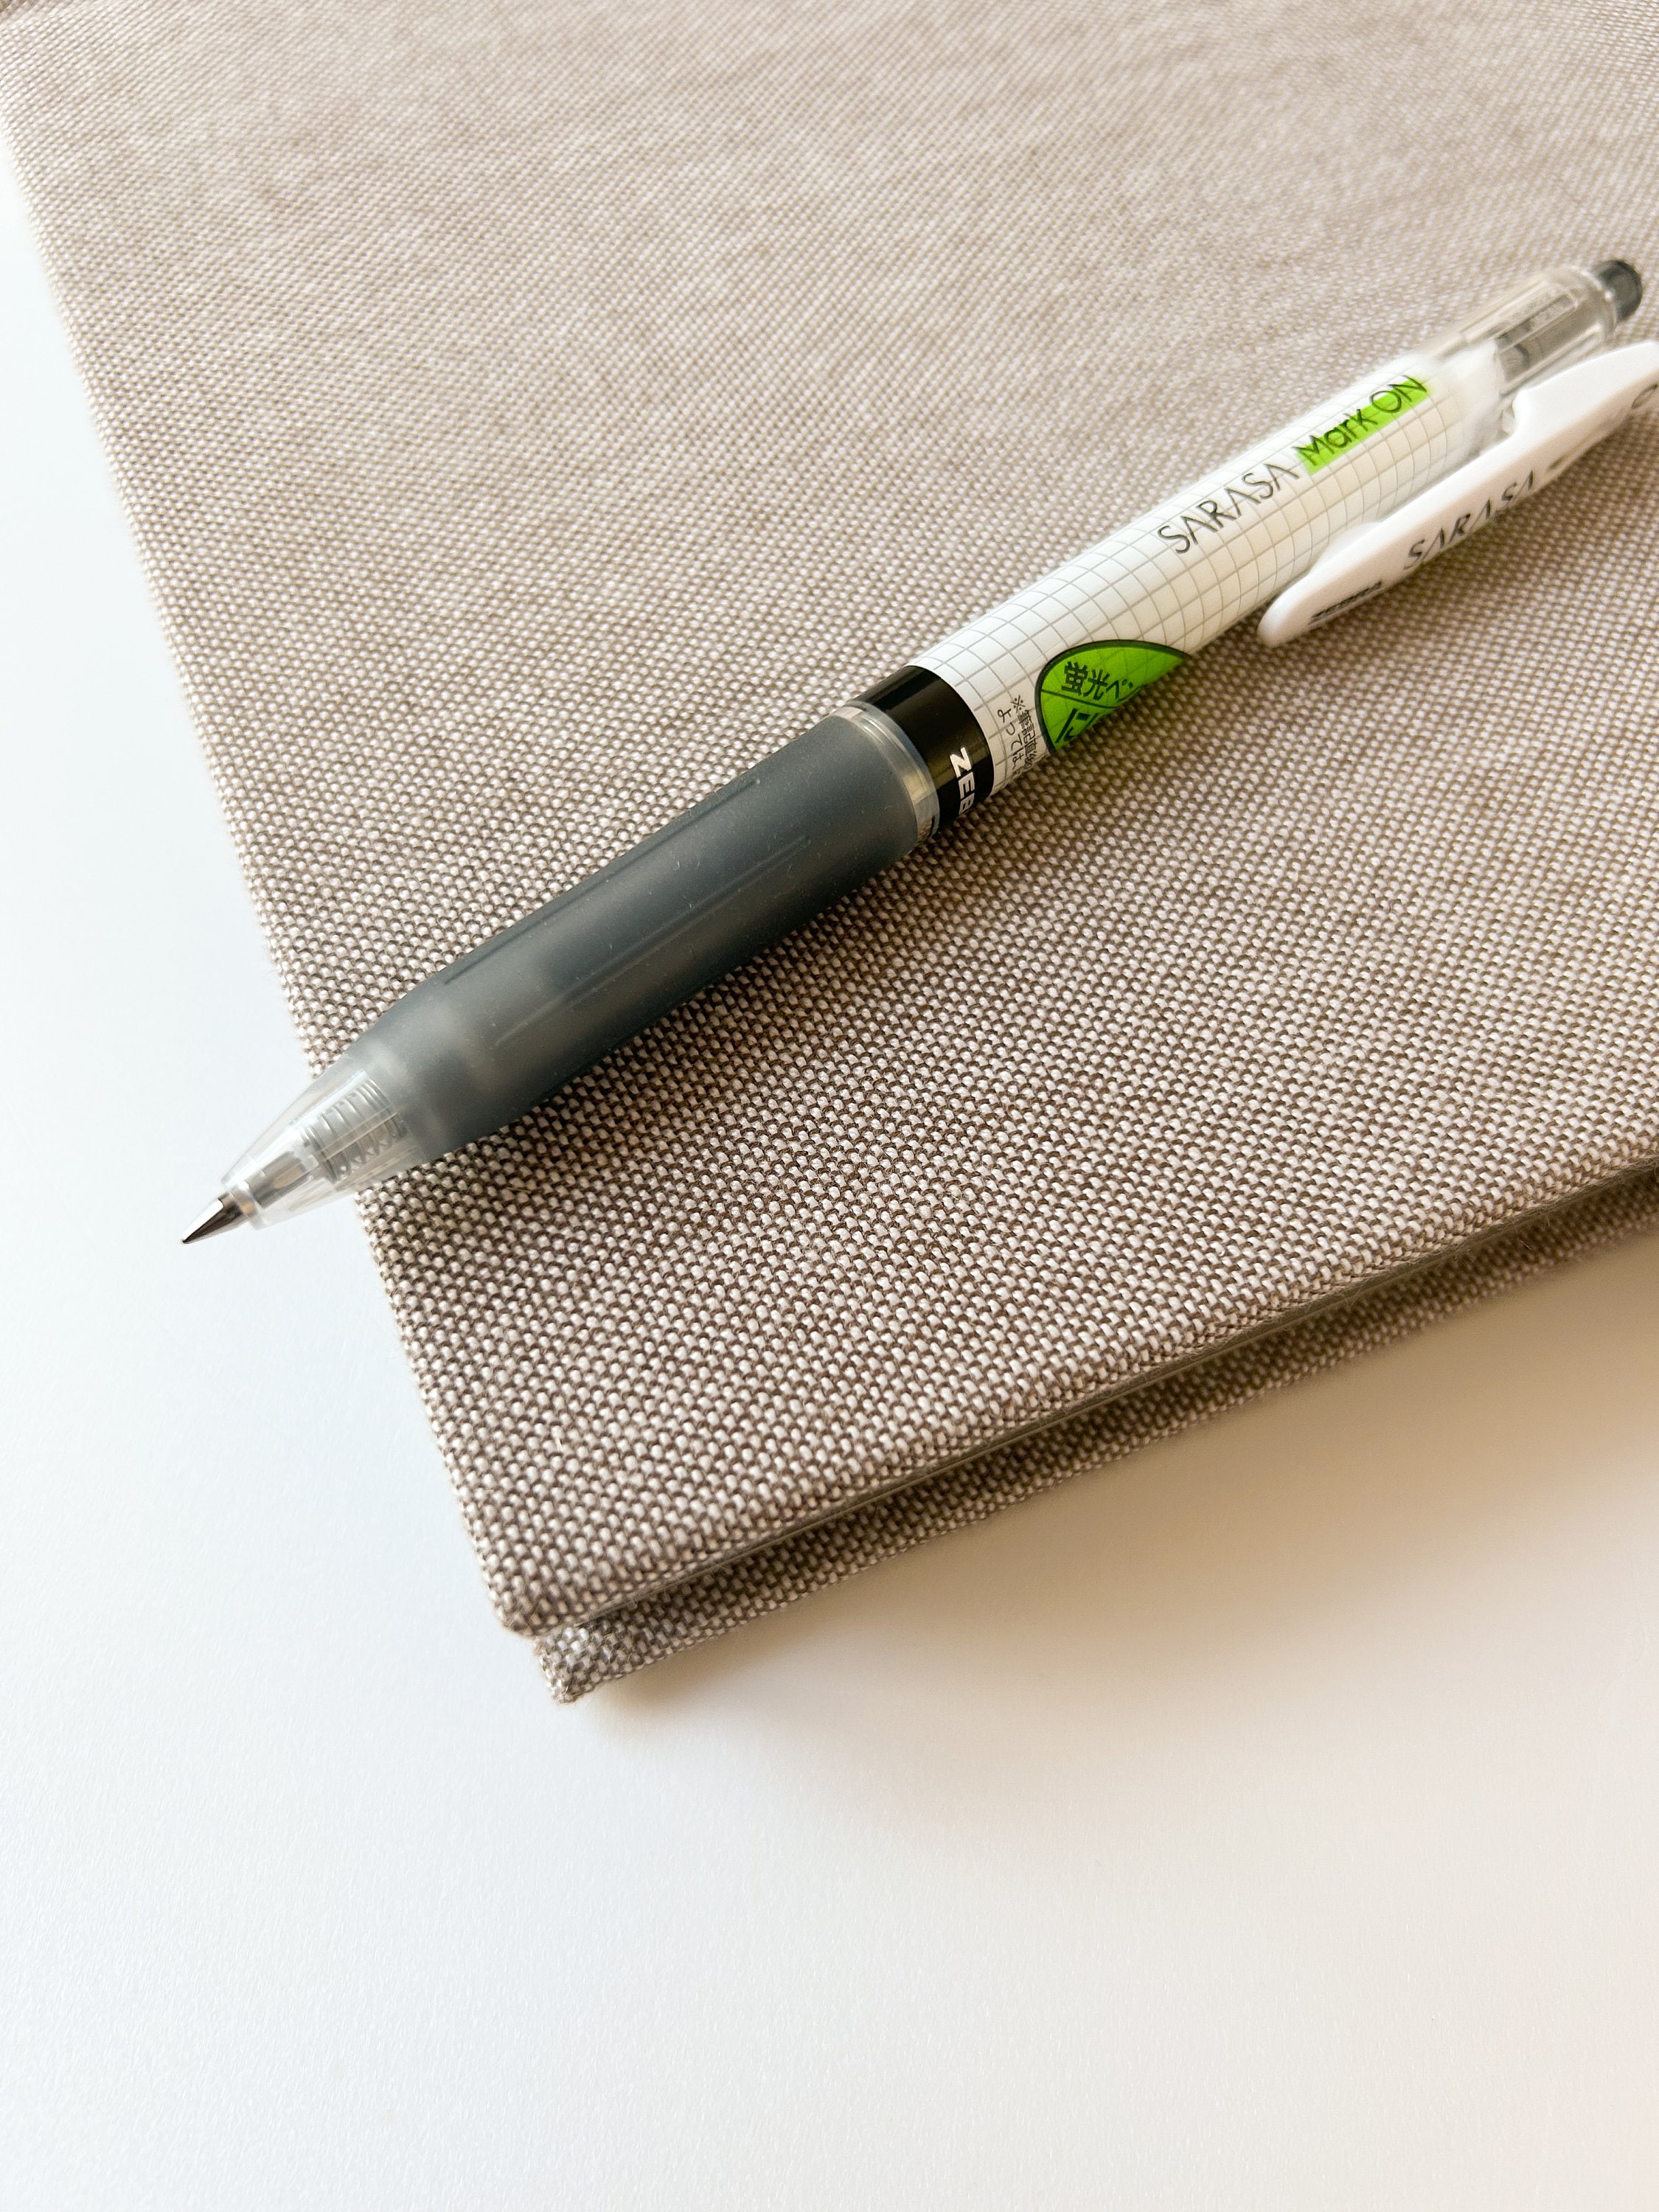 12pcs Candy Color Color Gel Pen Fiber Water-based Pen Signature Pens  Neutral Watercolor Pen 0.4mm Student Planner Accessories - AliExpress